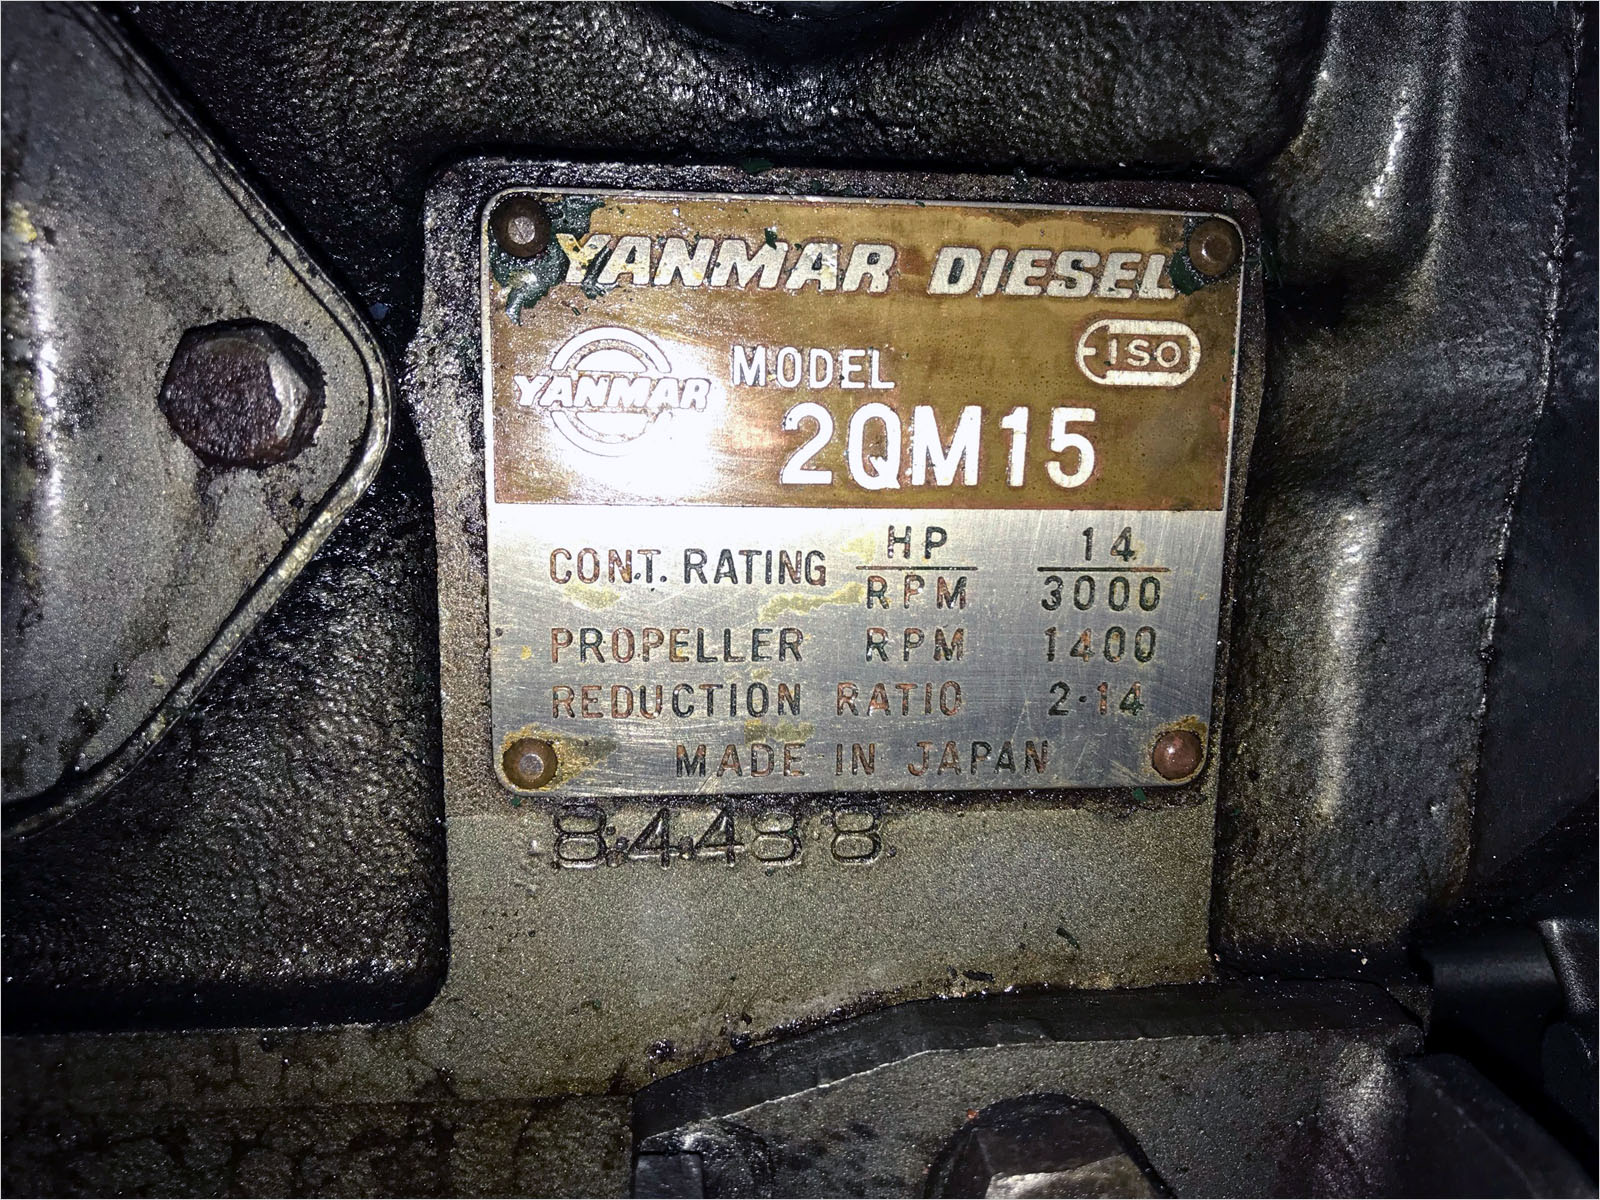 Yanmar 1979 - 2QM15  – Click for full details